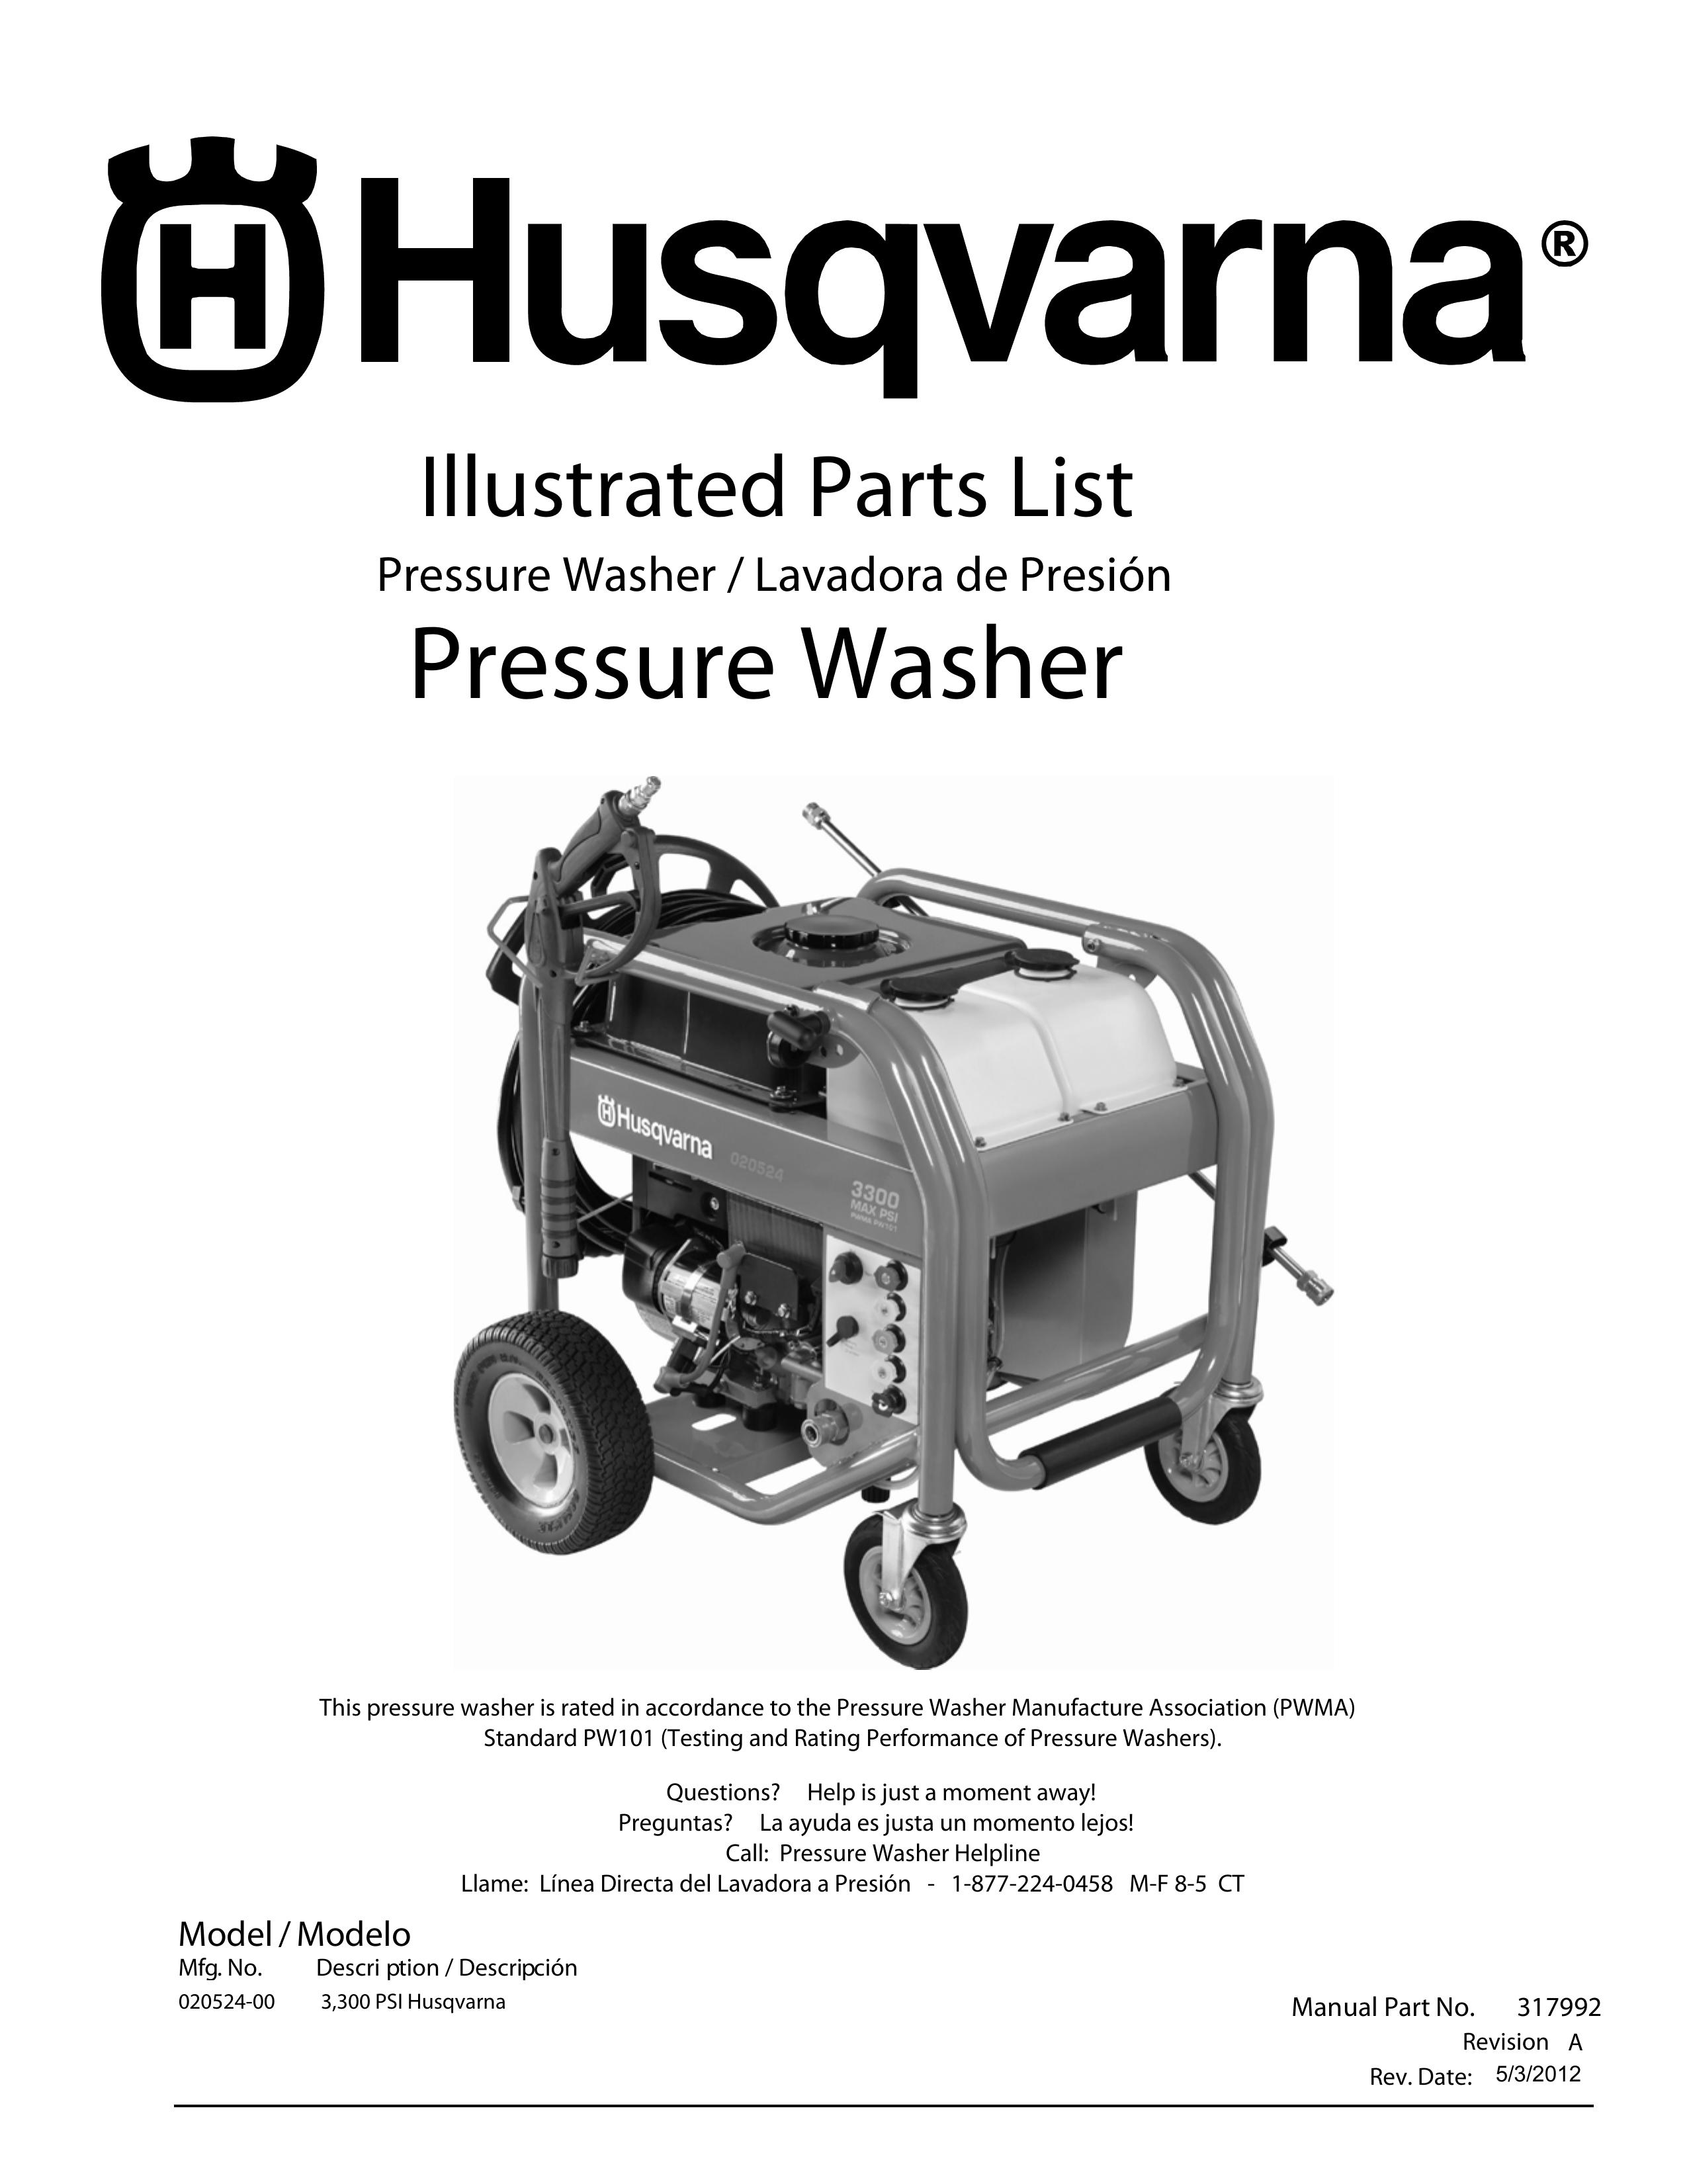 Husqvarna 300 PSI Pressure Washer User Manual